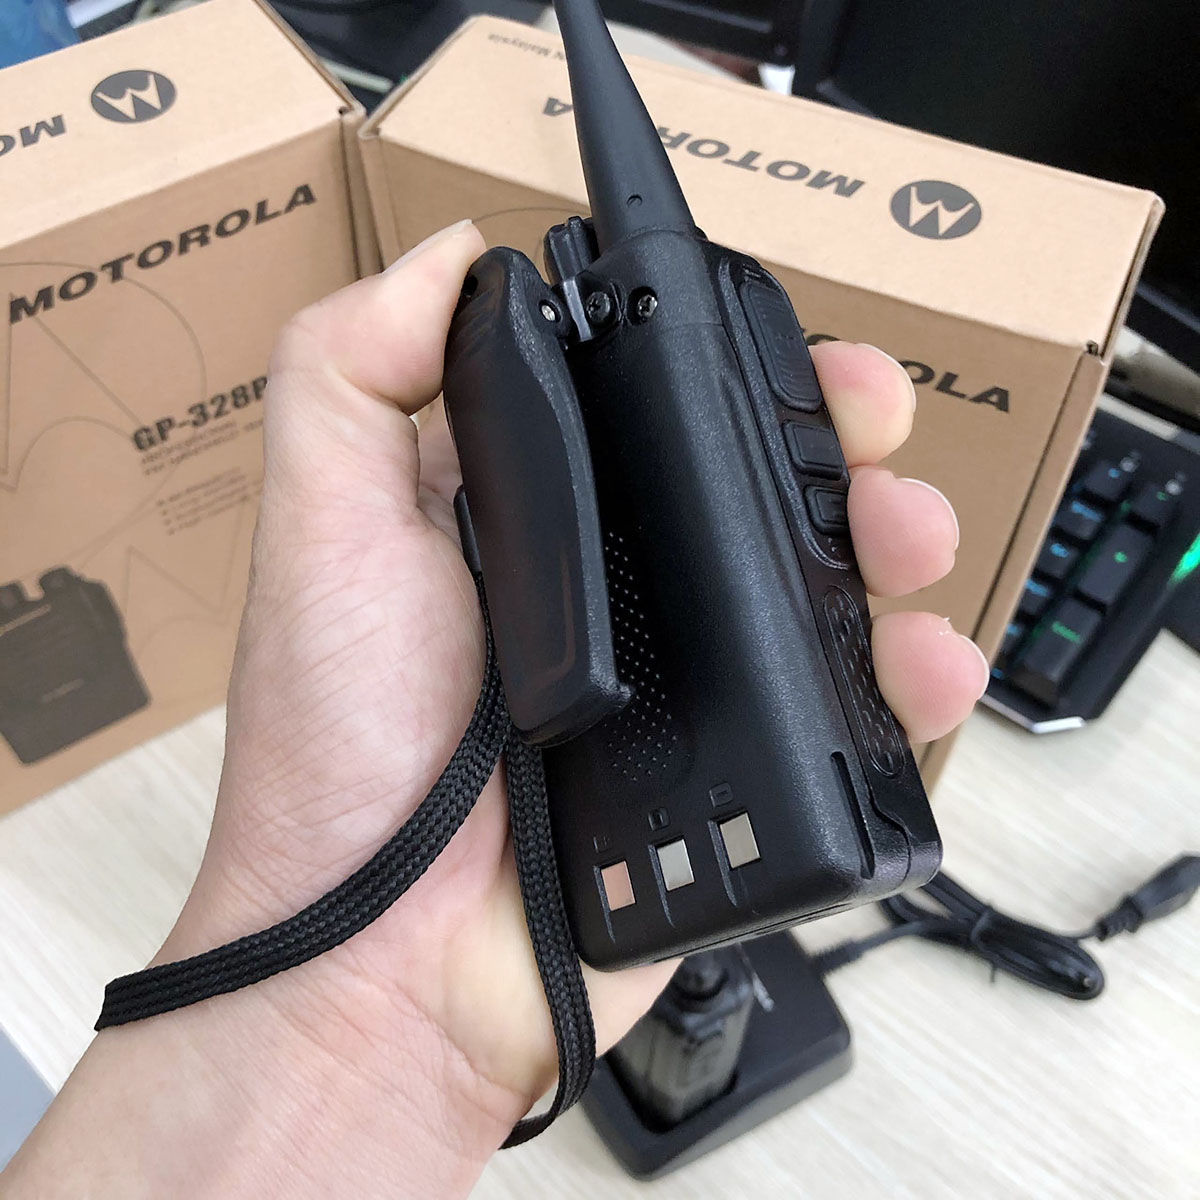 Bộ đàm Motorola GP-328Plus phiên bản mới nhỏ gọn. Công suất lớn giúp phá vật cản tốt – Hàng nhập khẩu